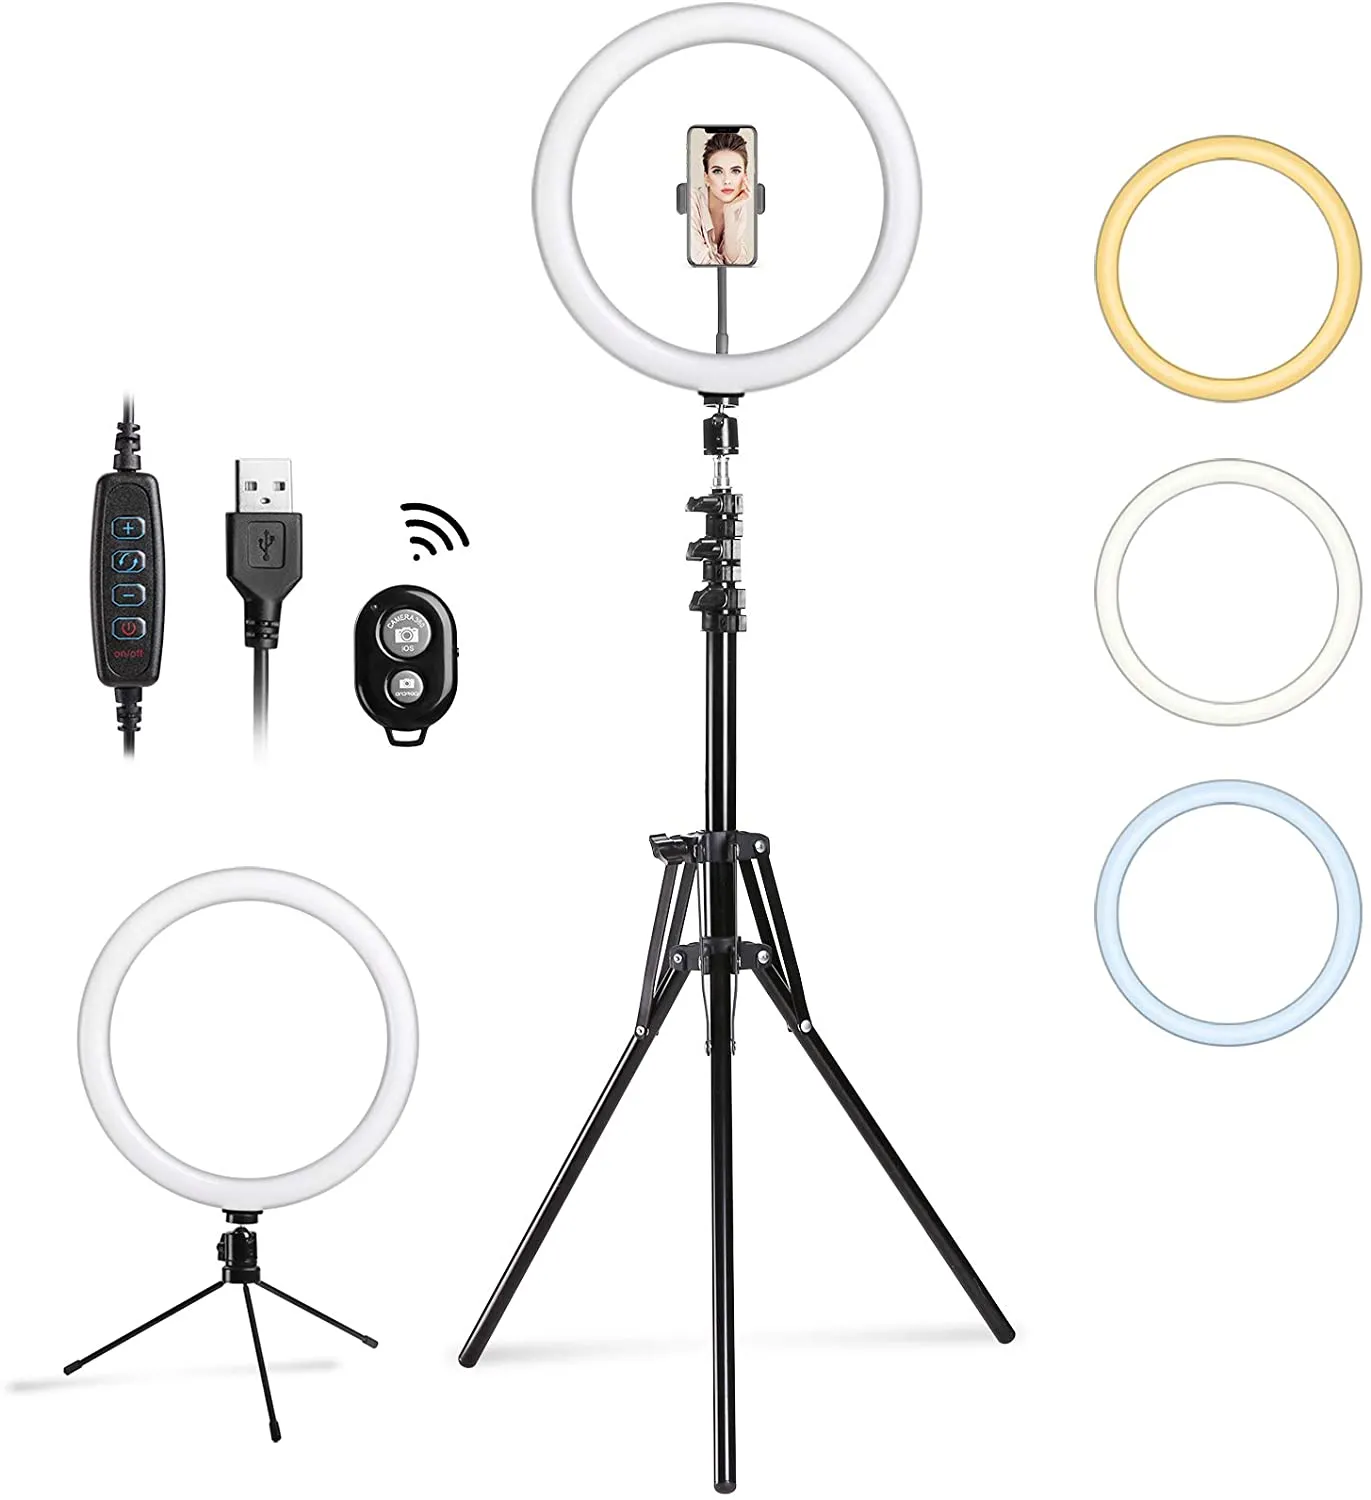 12 "Selfie Ring Light LED Camera illuminazione per YouTube Video Shooting / Fotografia Trucco di bellezza Livestream, Compatibile con IOS Android